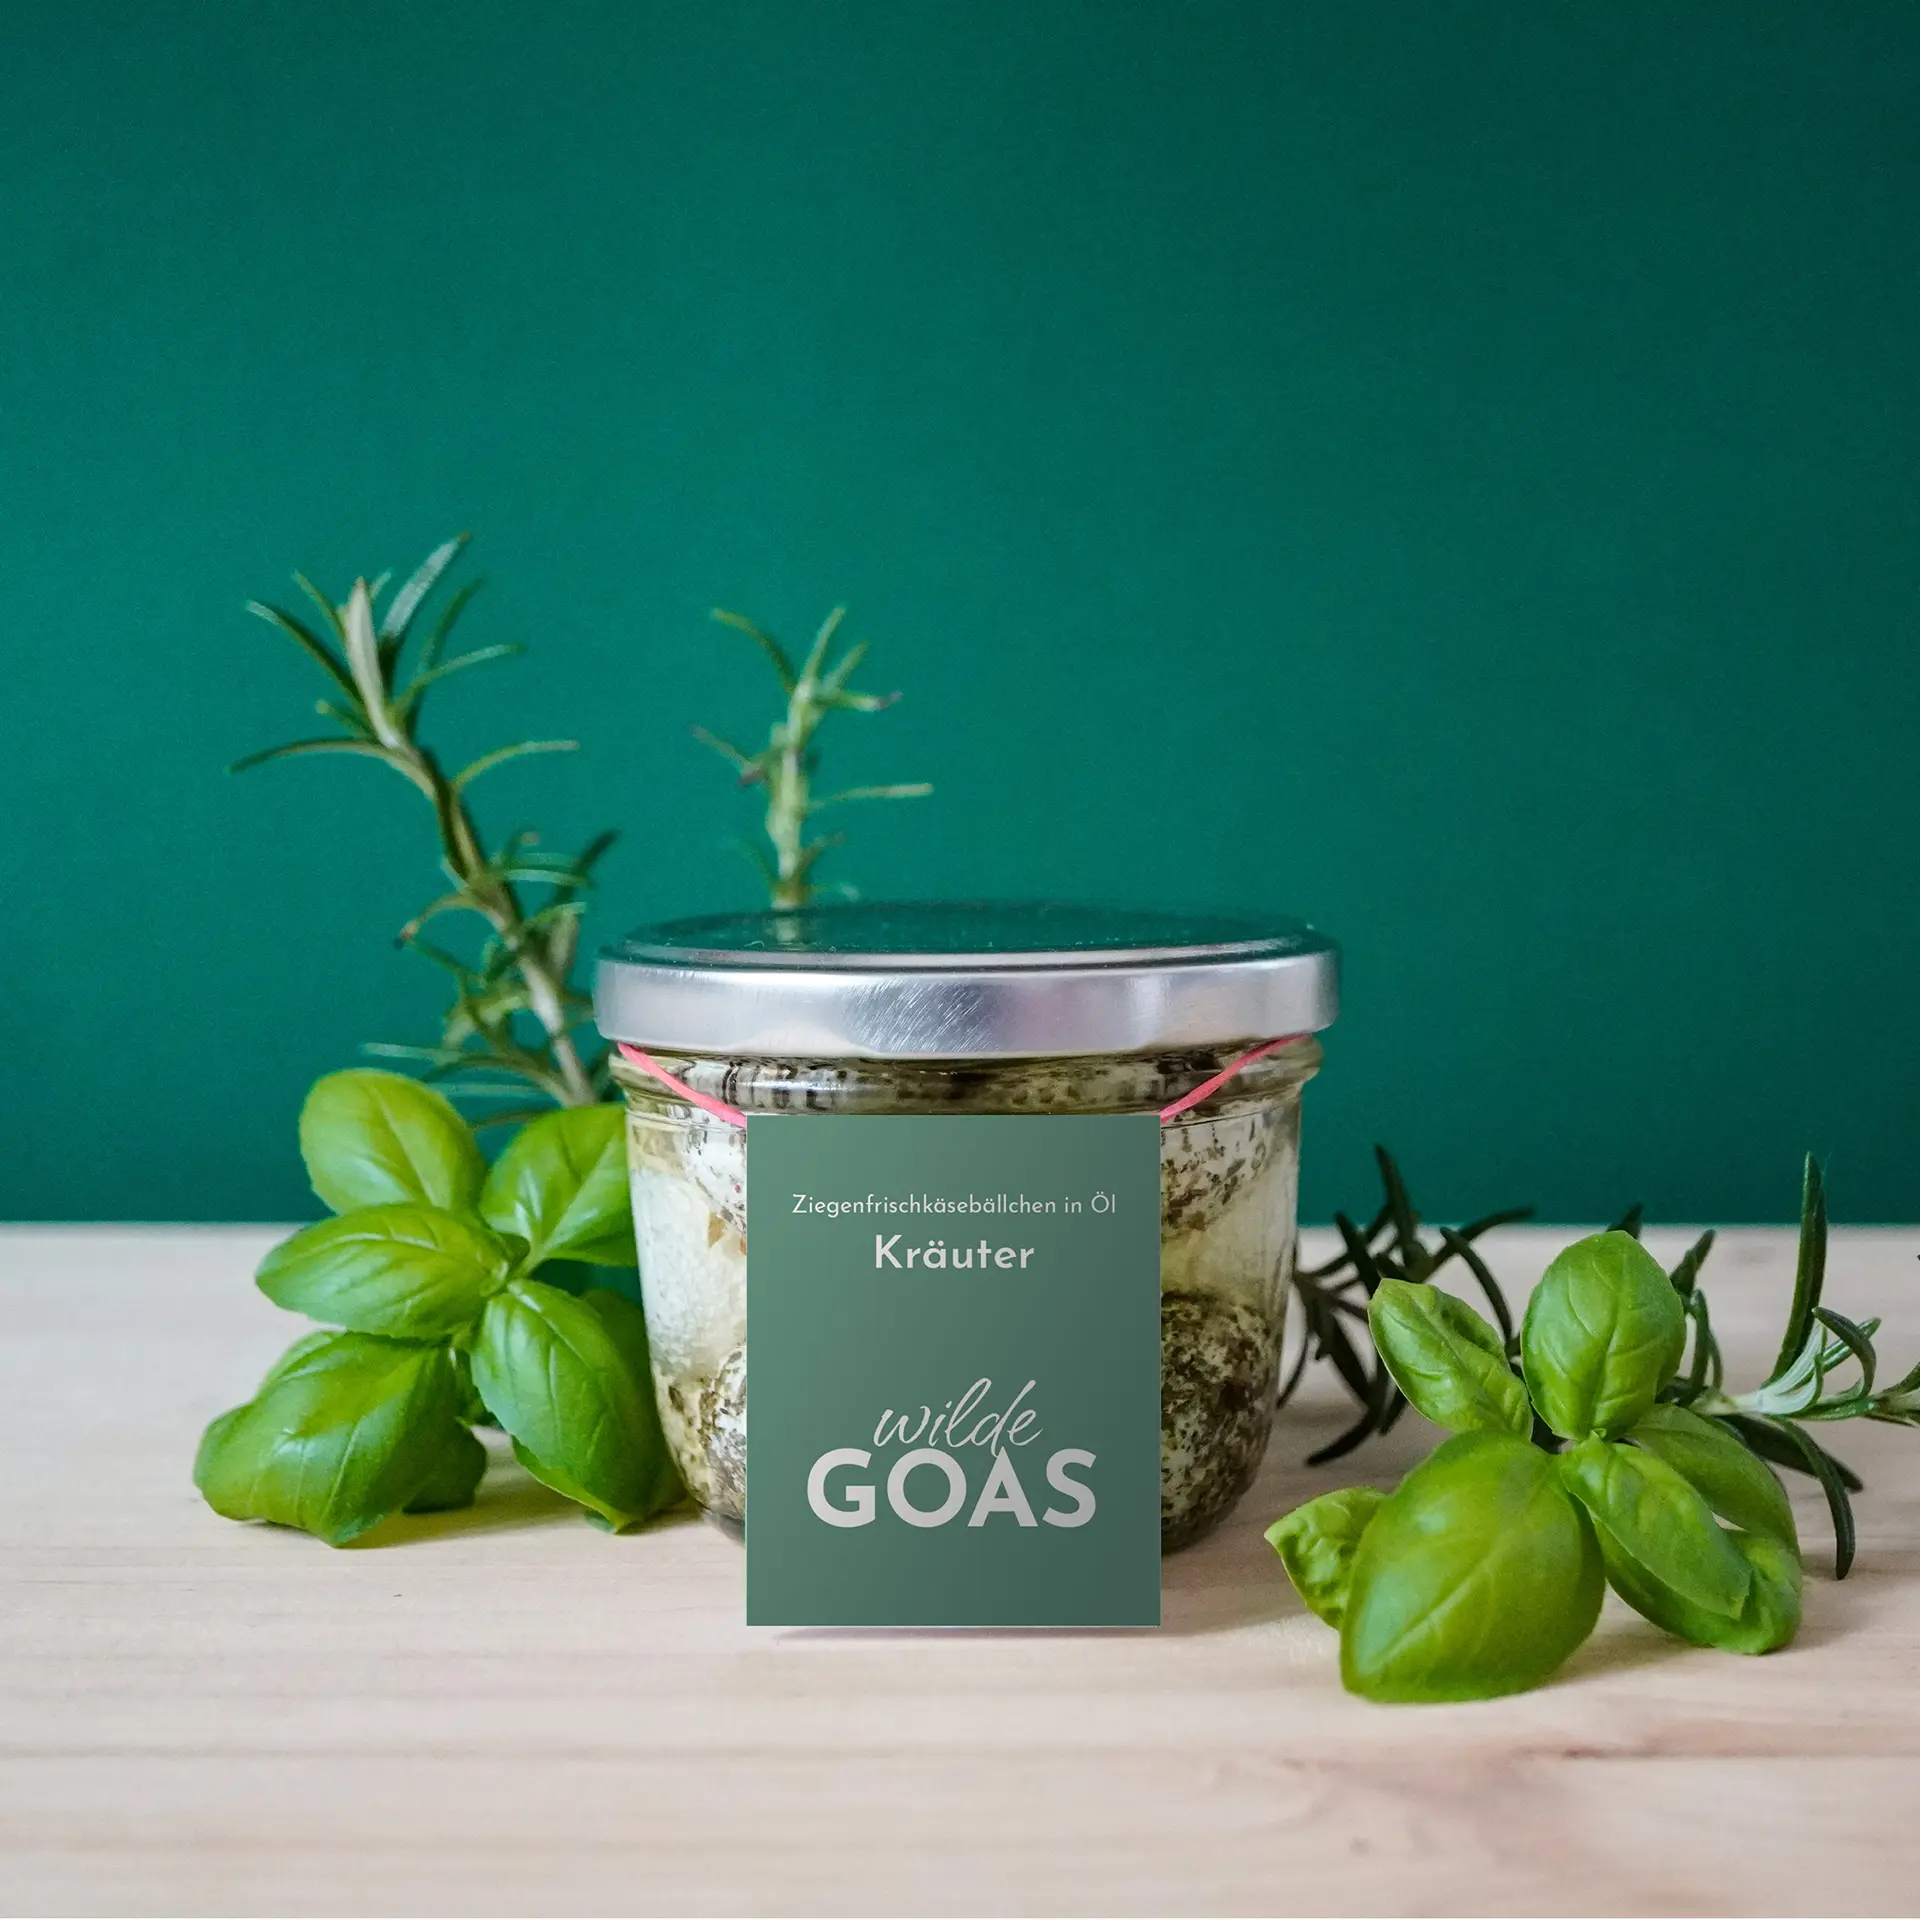 Logo Design für Wilde Goas von Corliss Design, zu sehen ist ein Glas mit Ziegenbällchenkäse mit Etikett